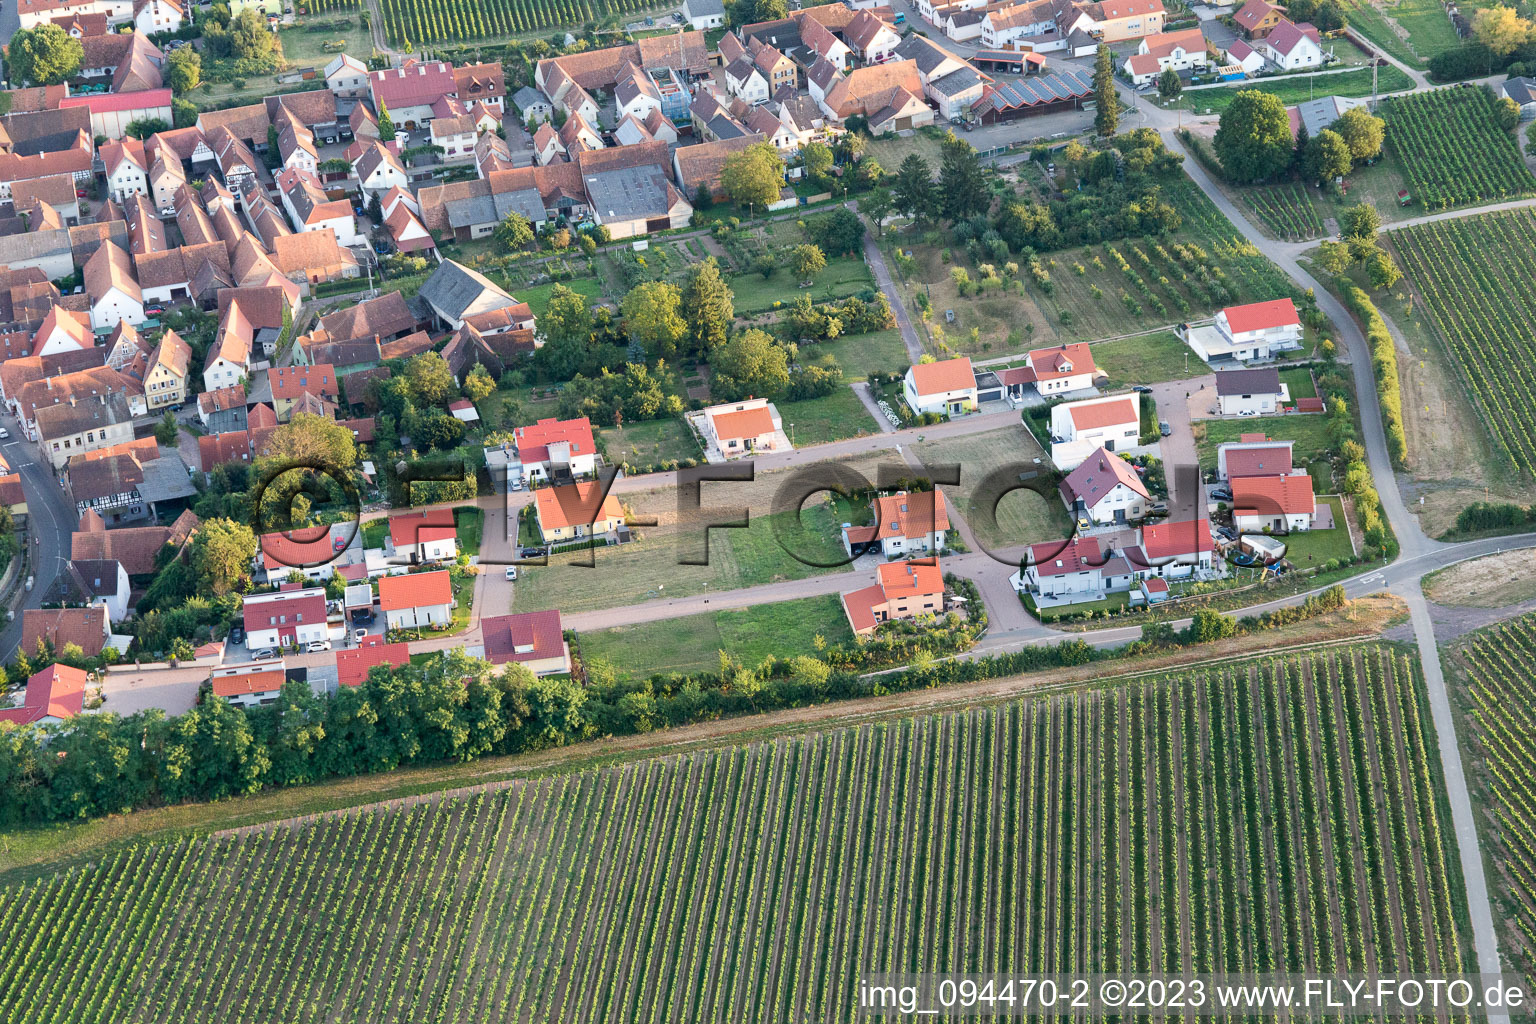 Impflingen im Bundesland Rheinland-Pfalz, Deutschland aus der Luft betrachtet